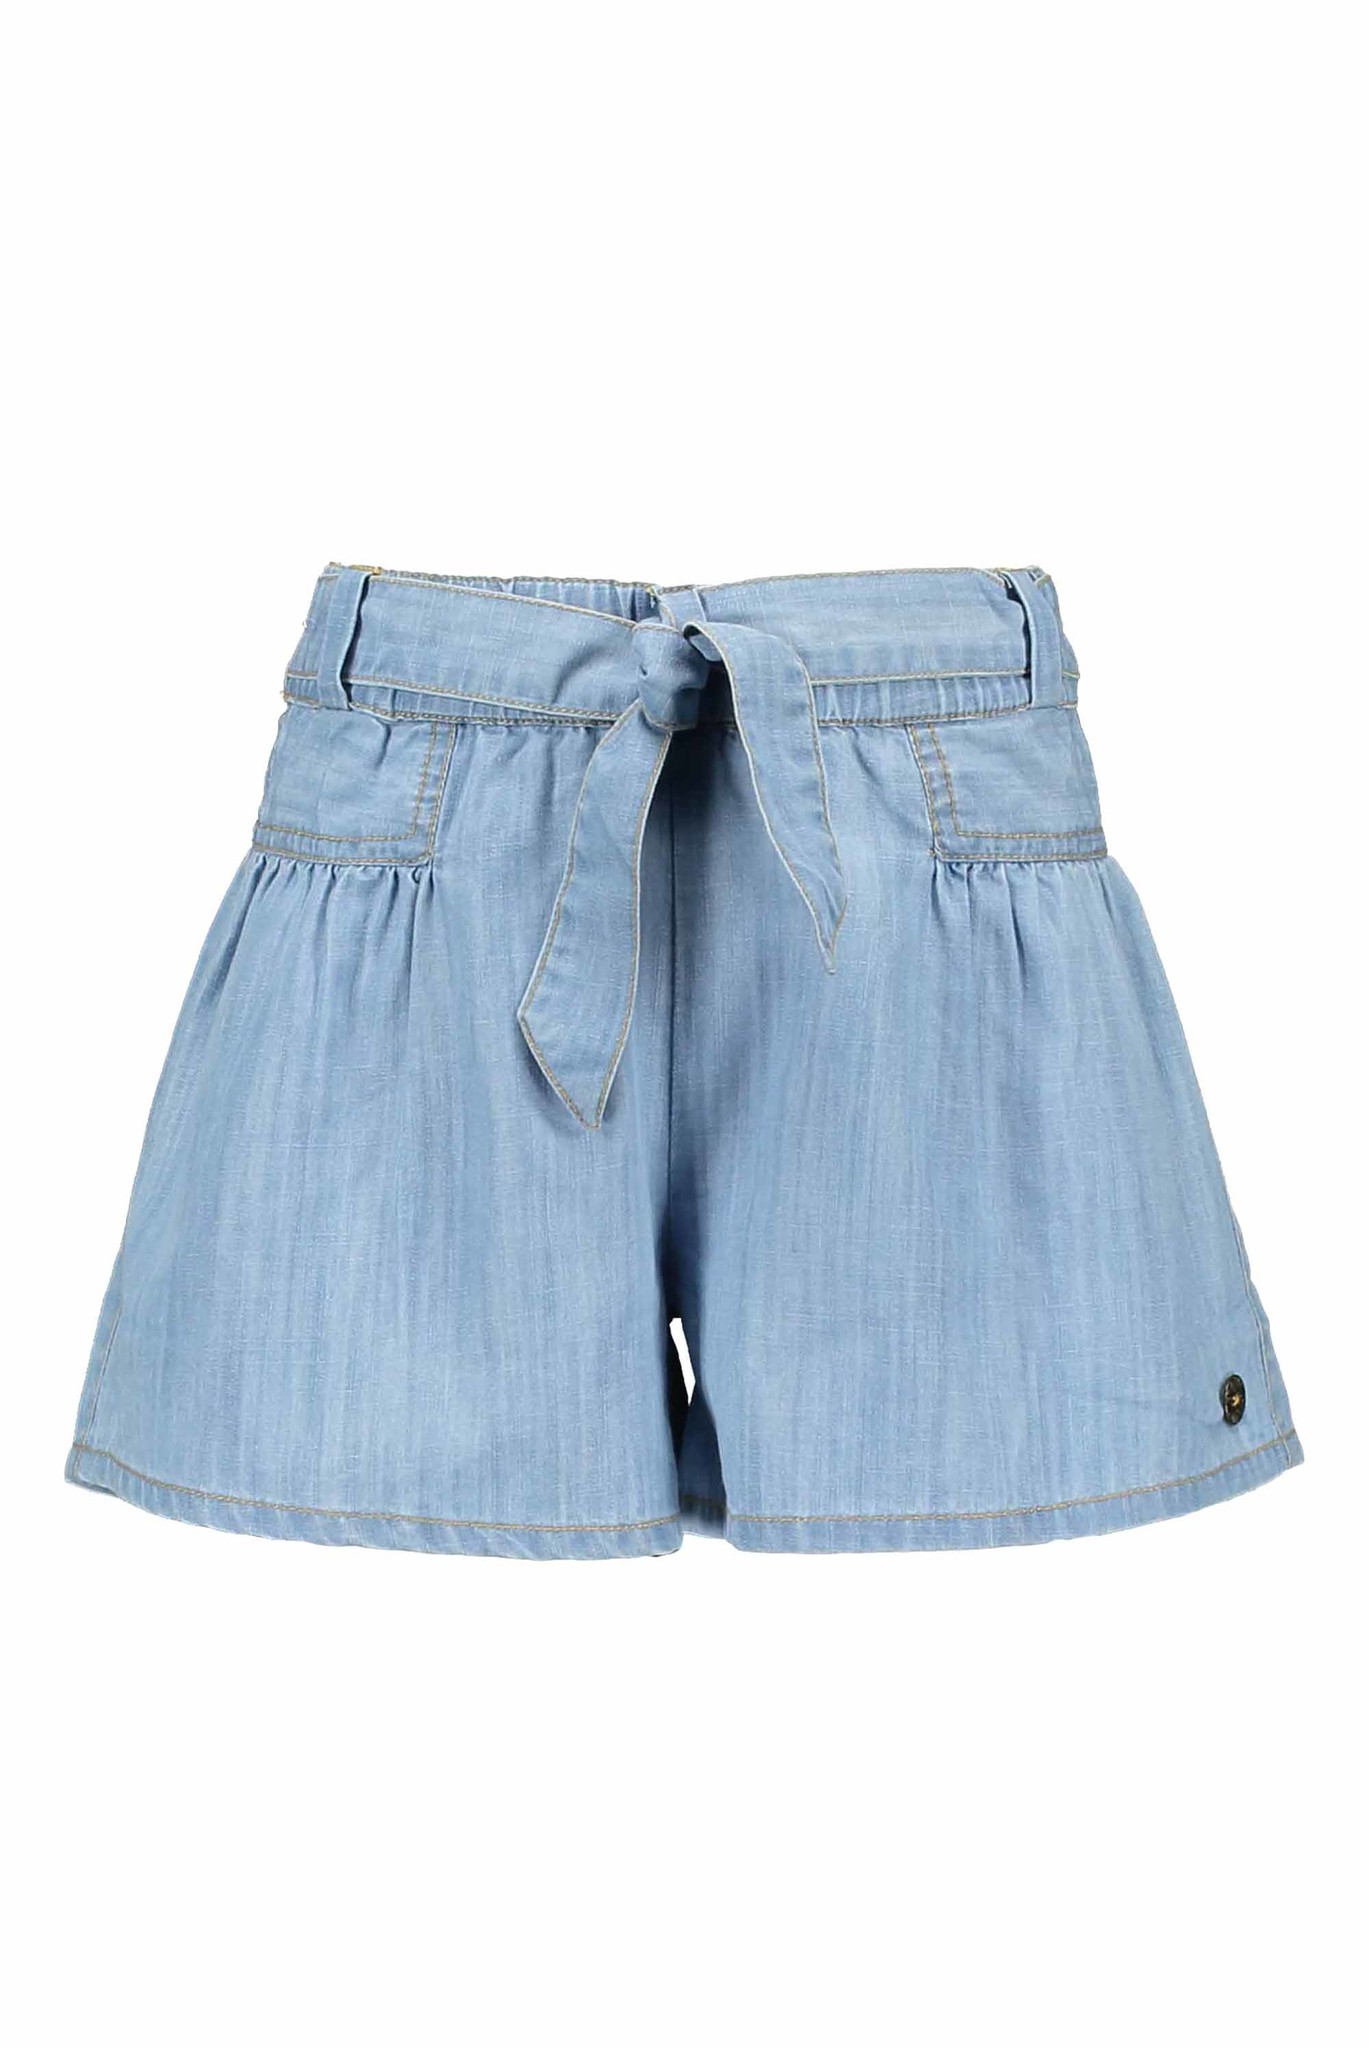 Like Flo Meisjes jeans short - Lt denim